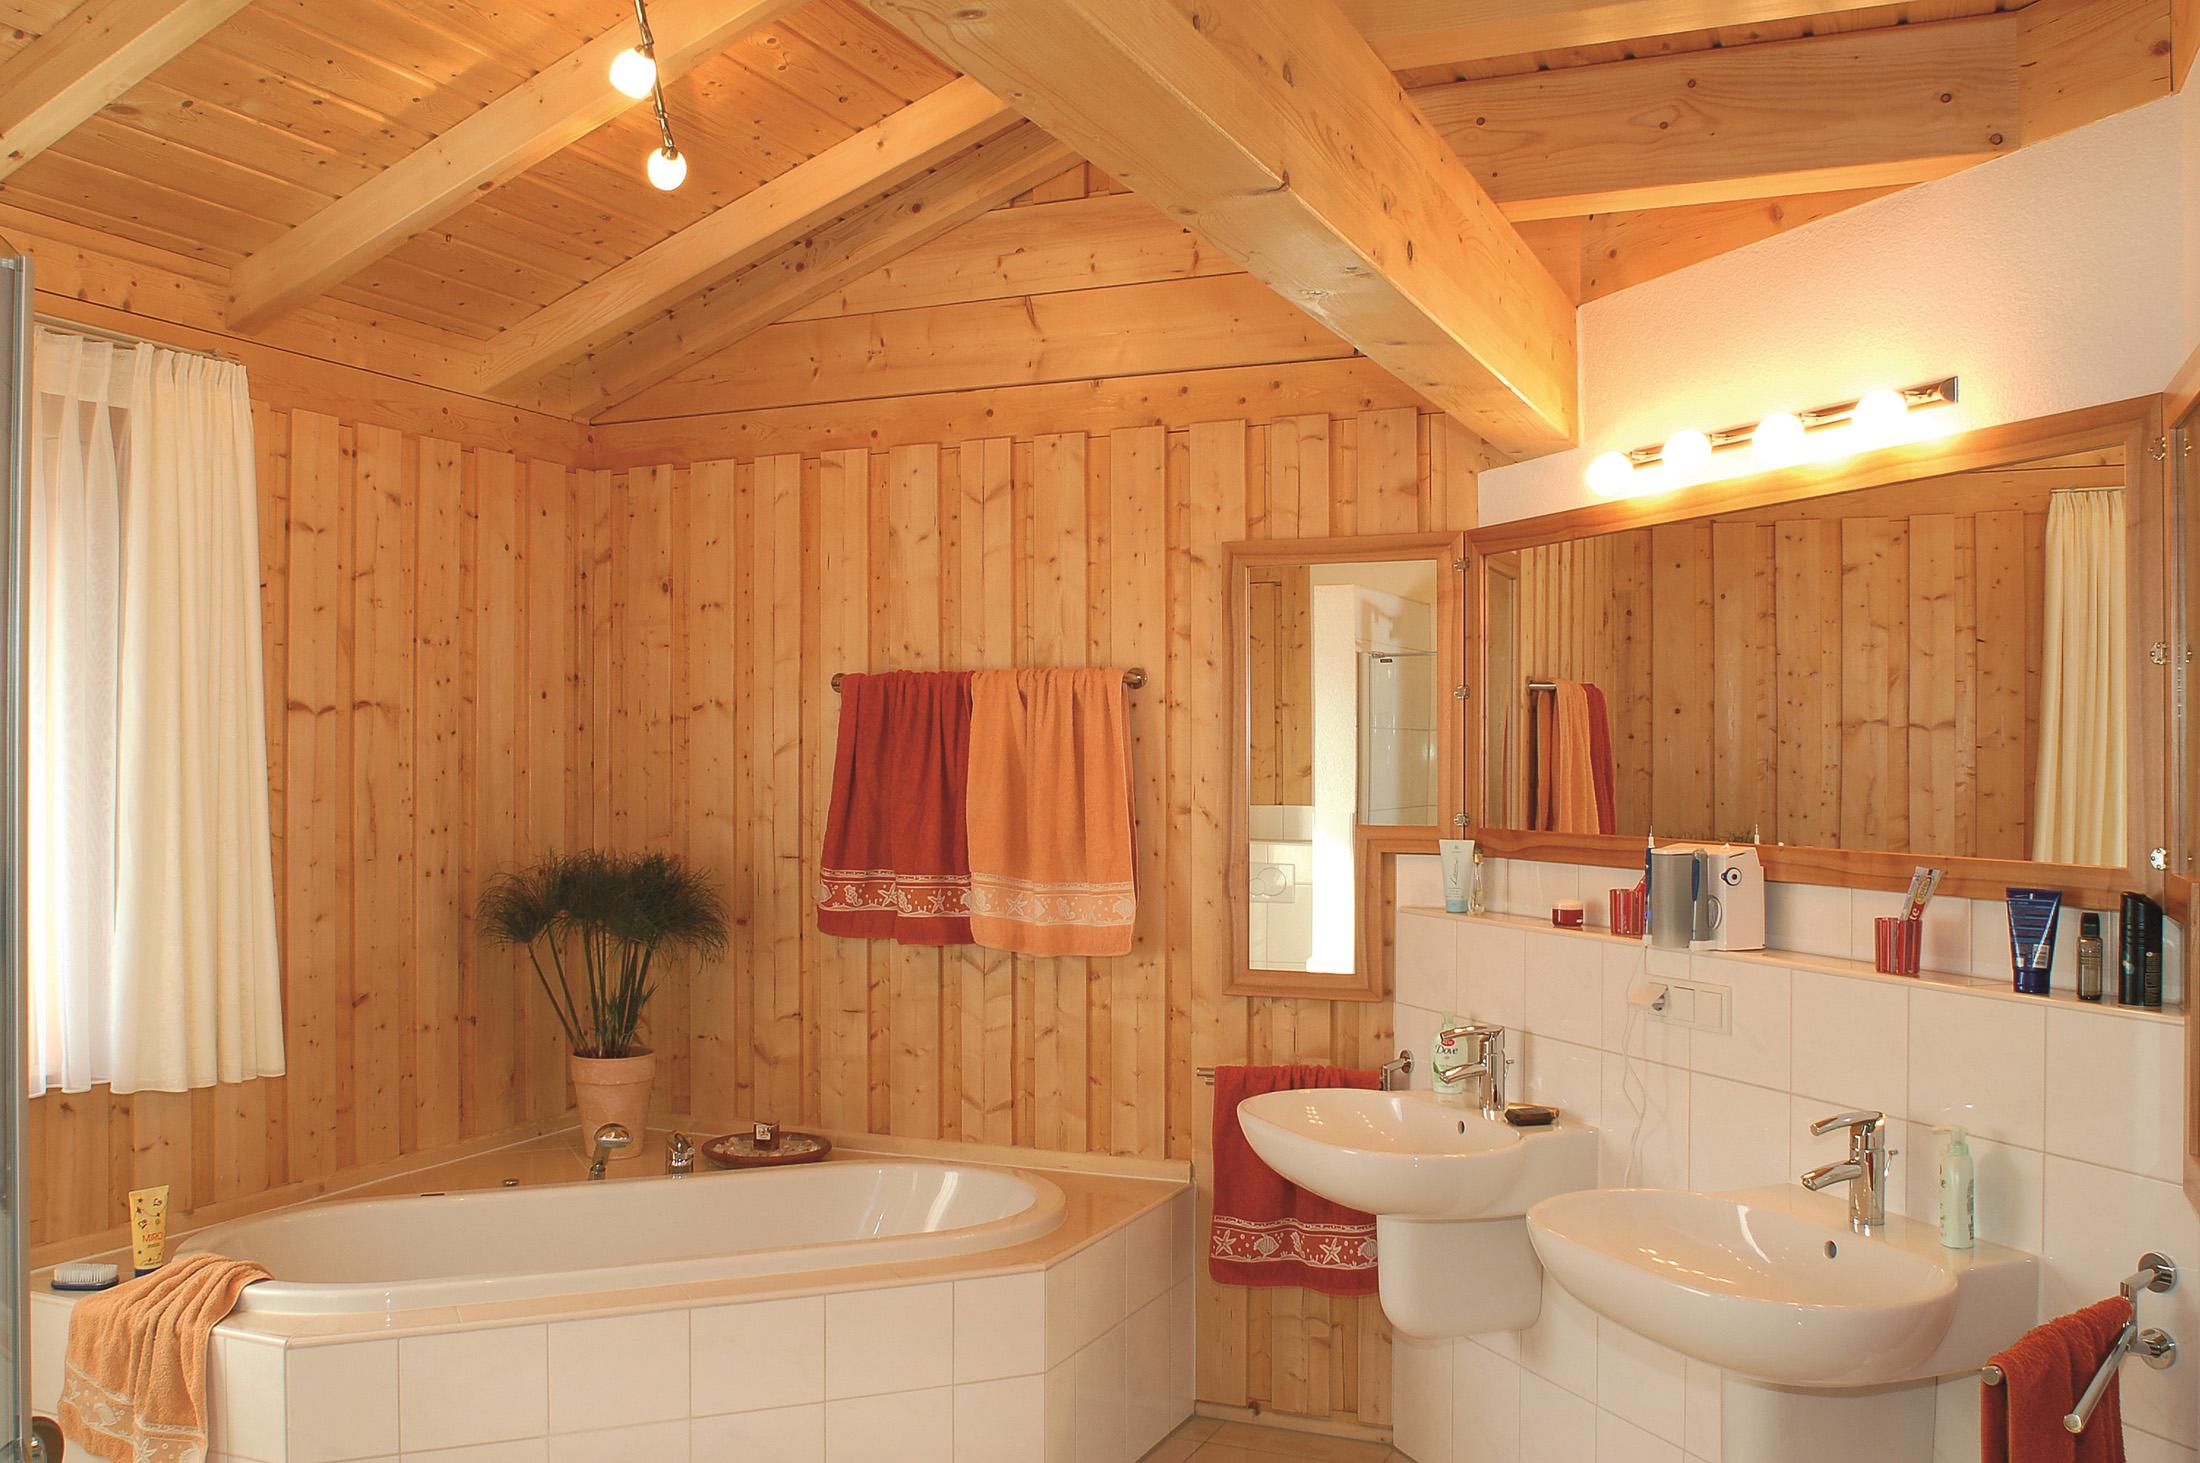 Holzverkleidung im Bad #badezimmerspiegel #spiegel #holzpaneel #deckenverkleidung #hölzernebadverkleidung ©Stommel Haus